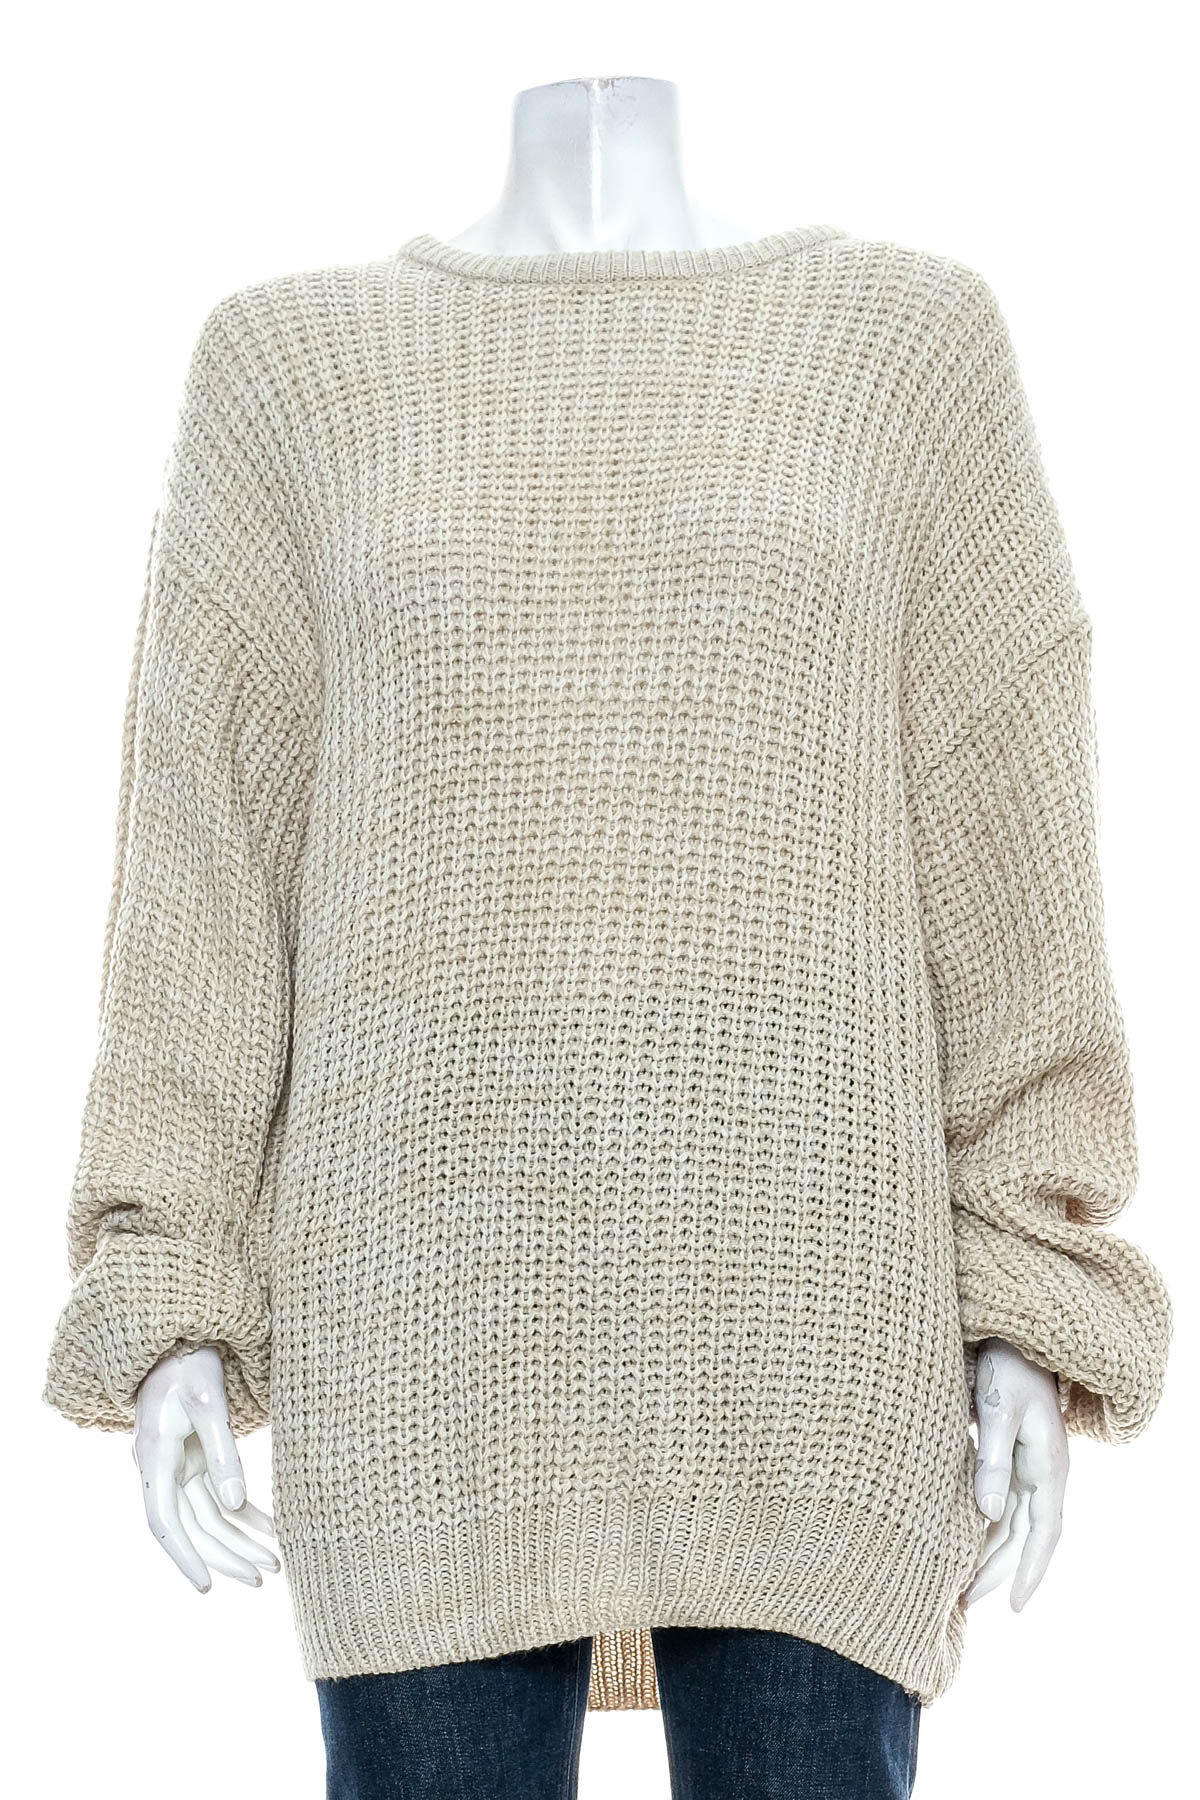 Γυναικείο πουλόβερ - Basic Editions - 0